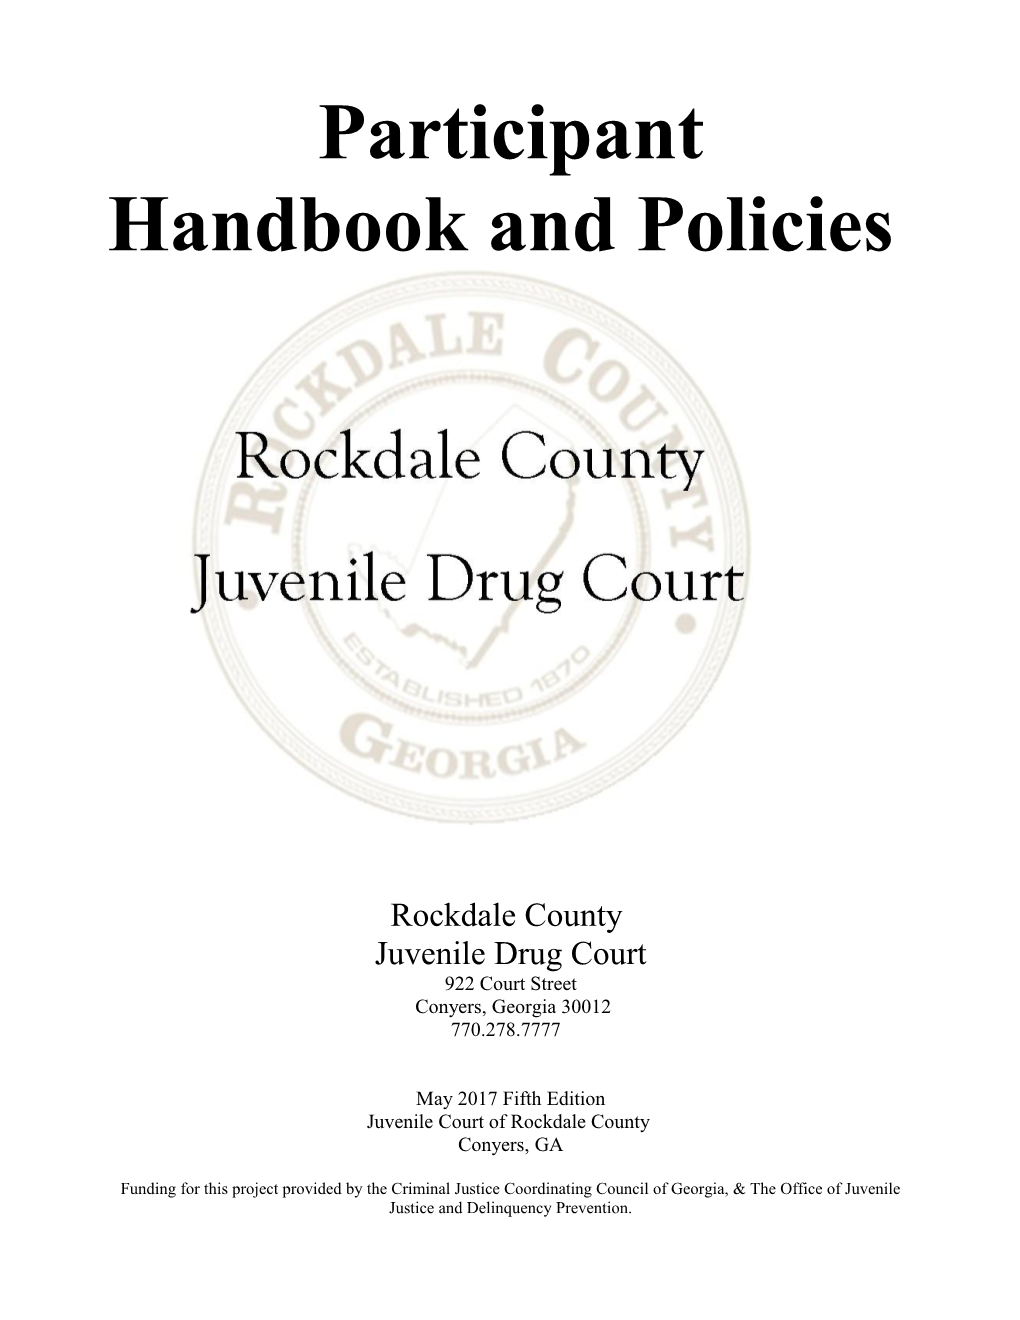 Handbook and Policies